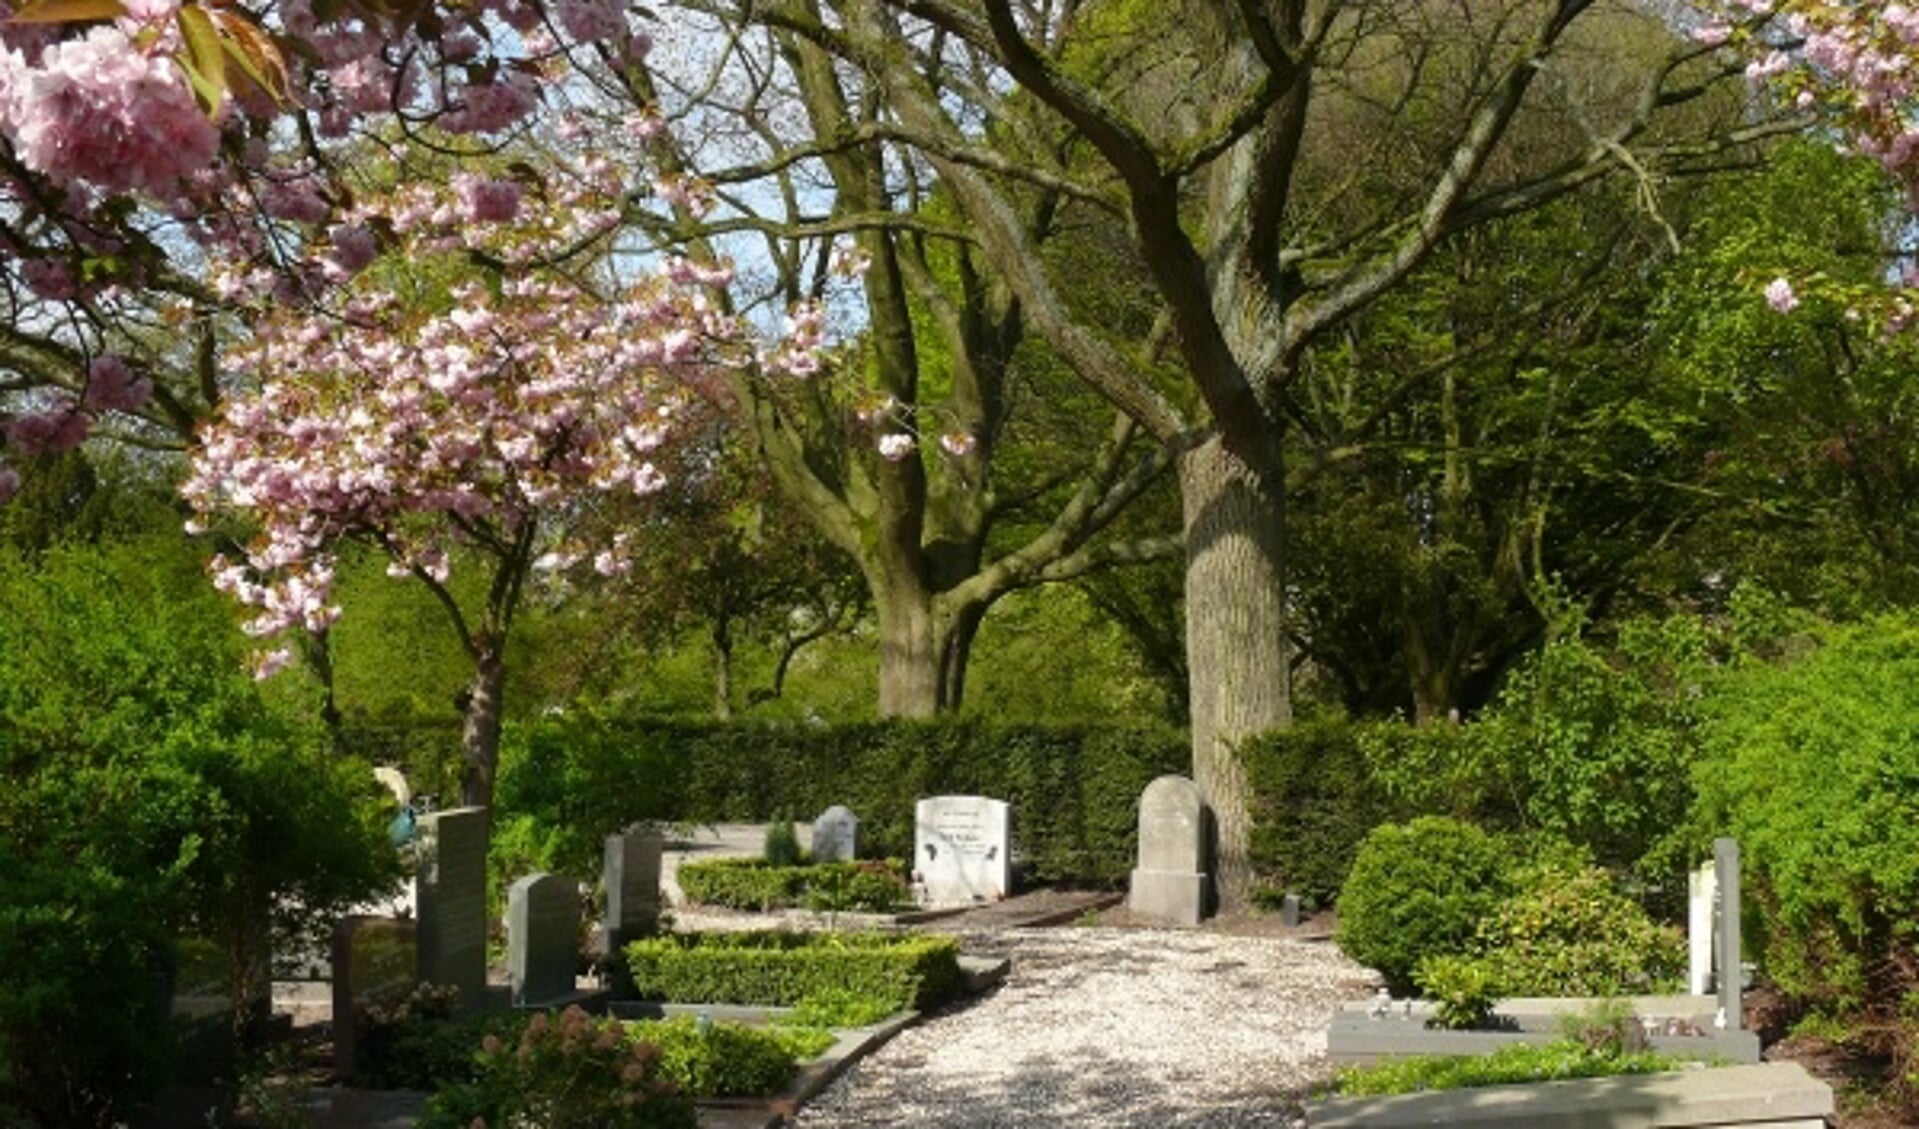 Ook de monumentale bomen op de begraafplaats komen aan bod.